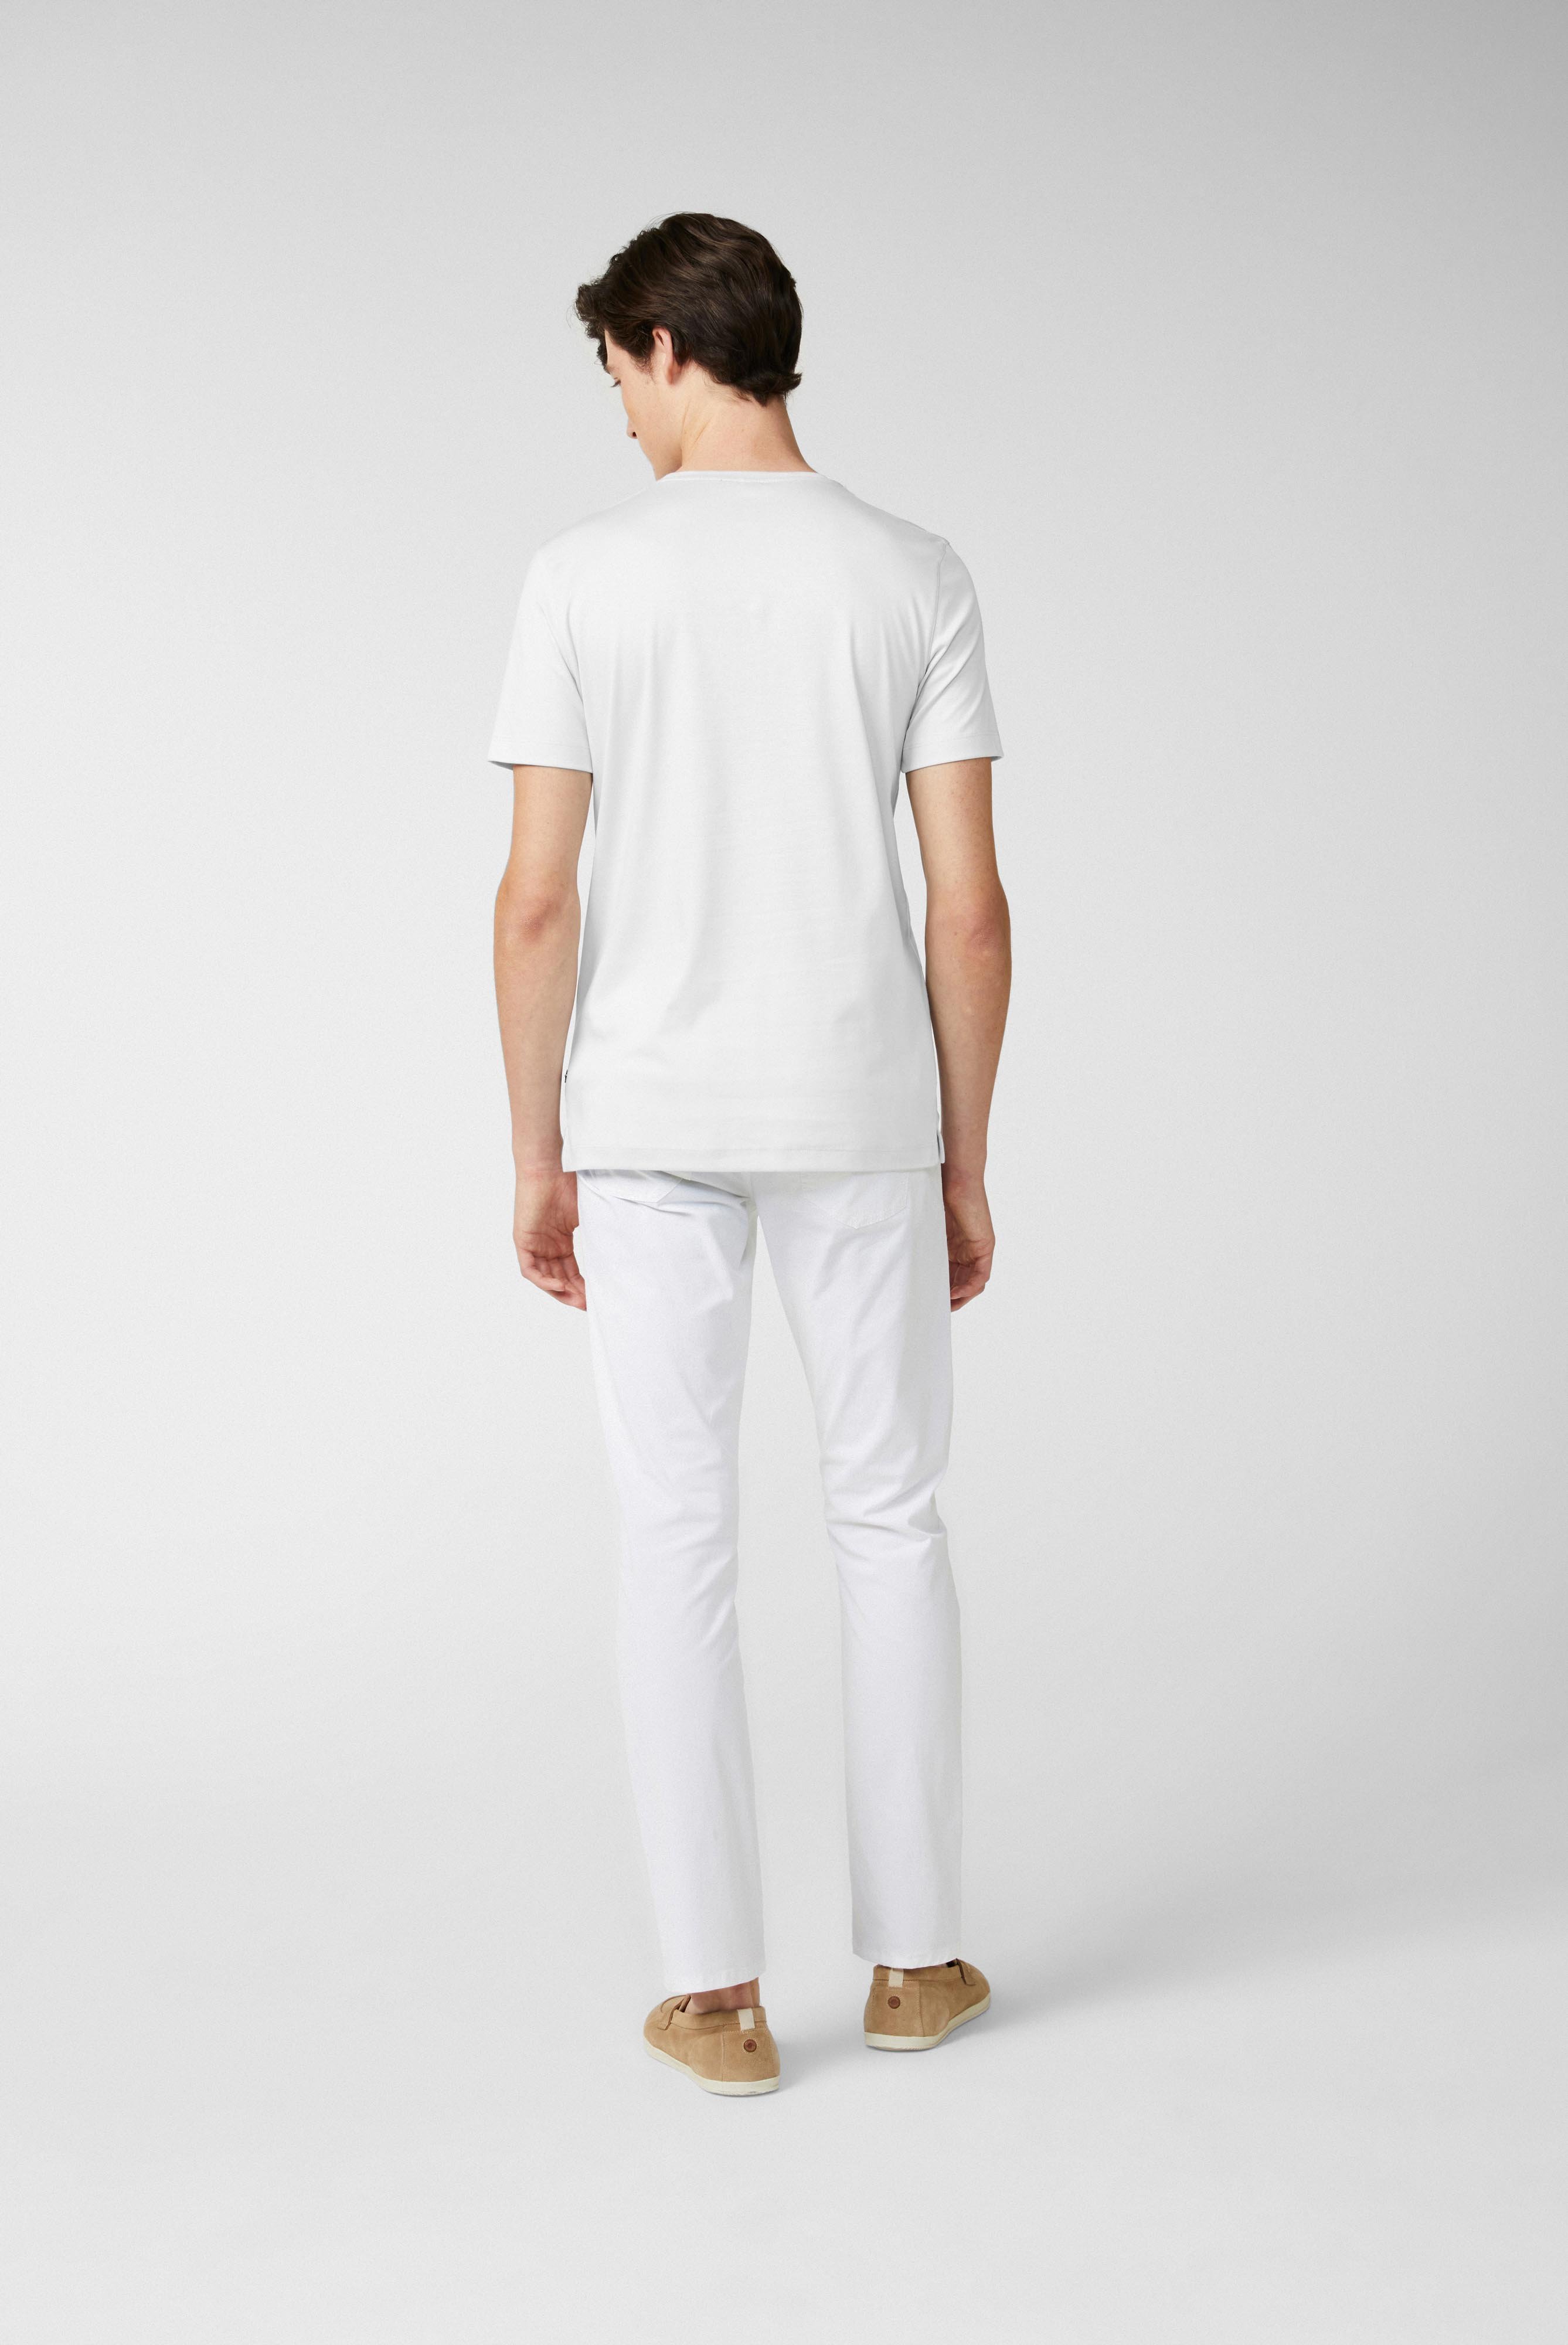 T-Shirts+Rundhals Jersey T-Shirt Slim Fit+20.1717.UX.180031.000.X4L